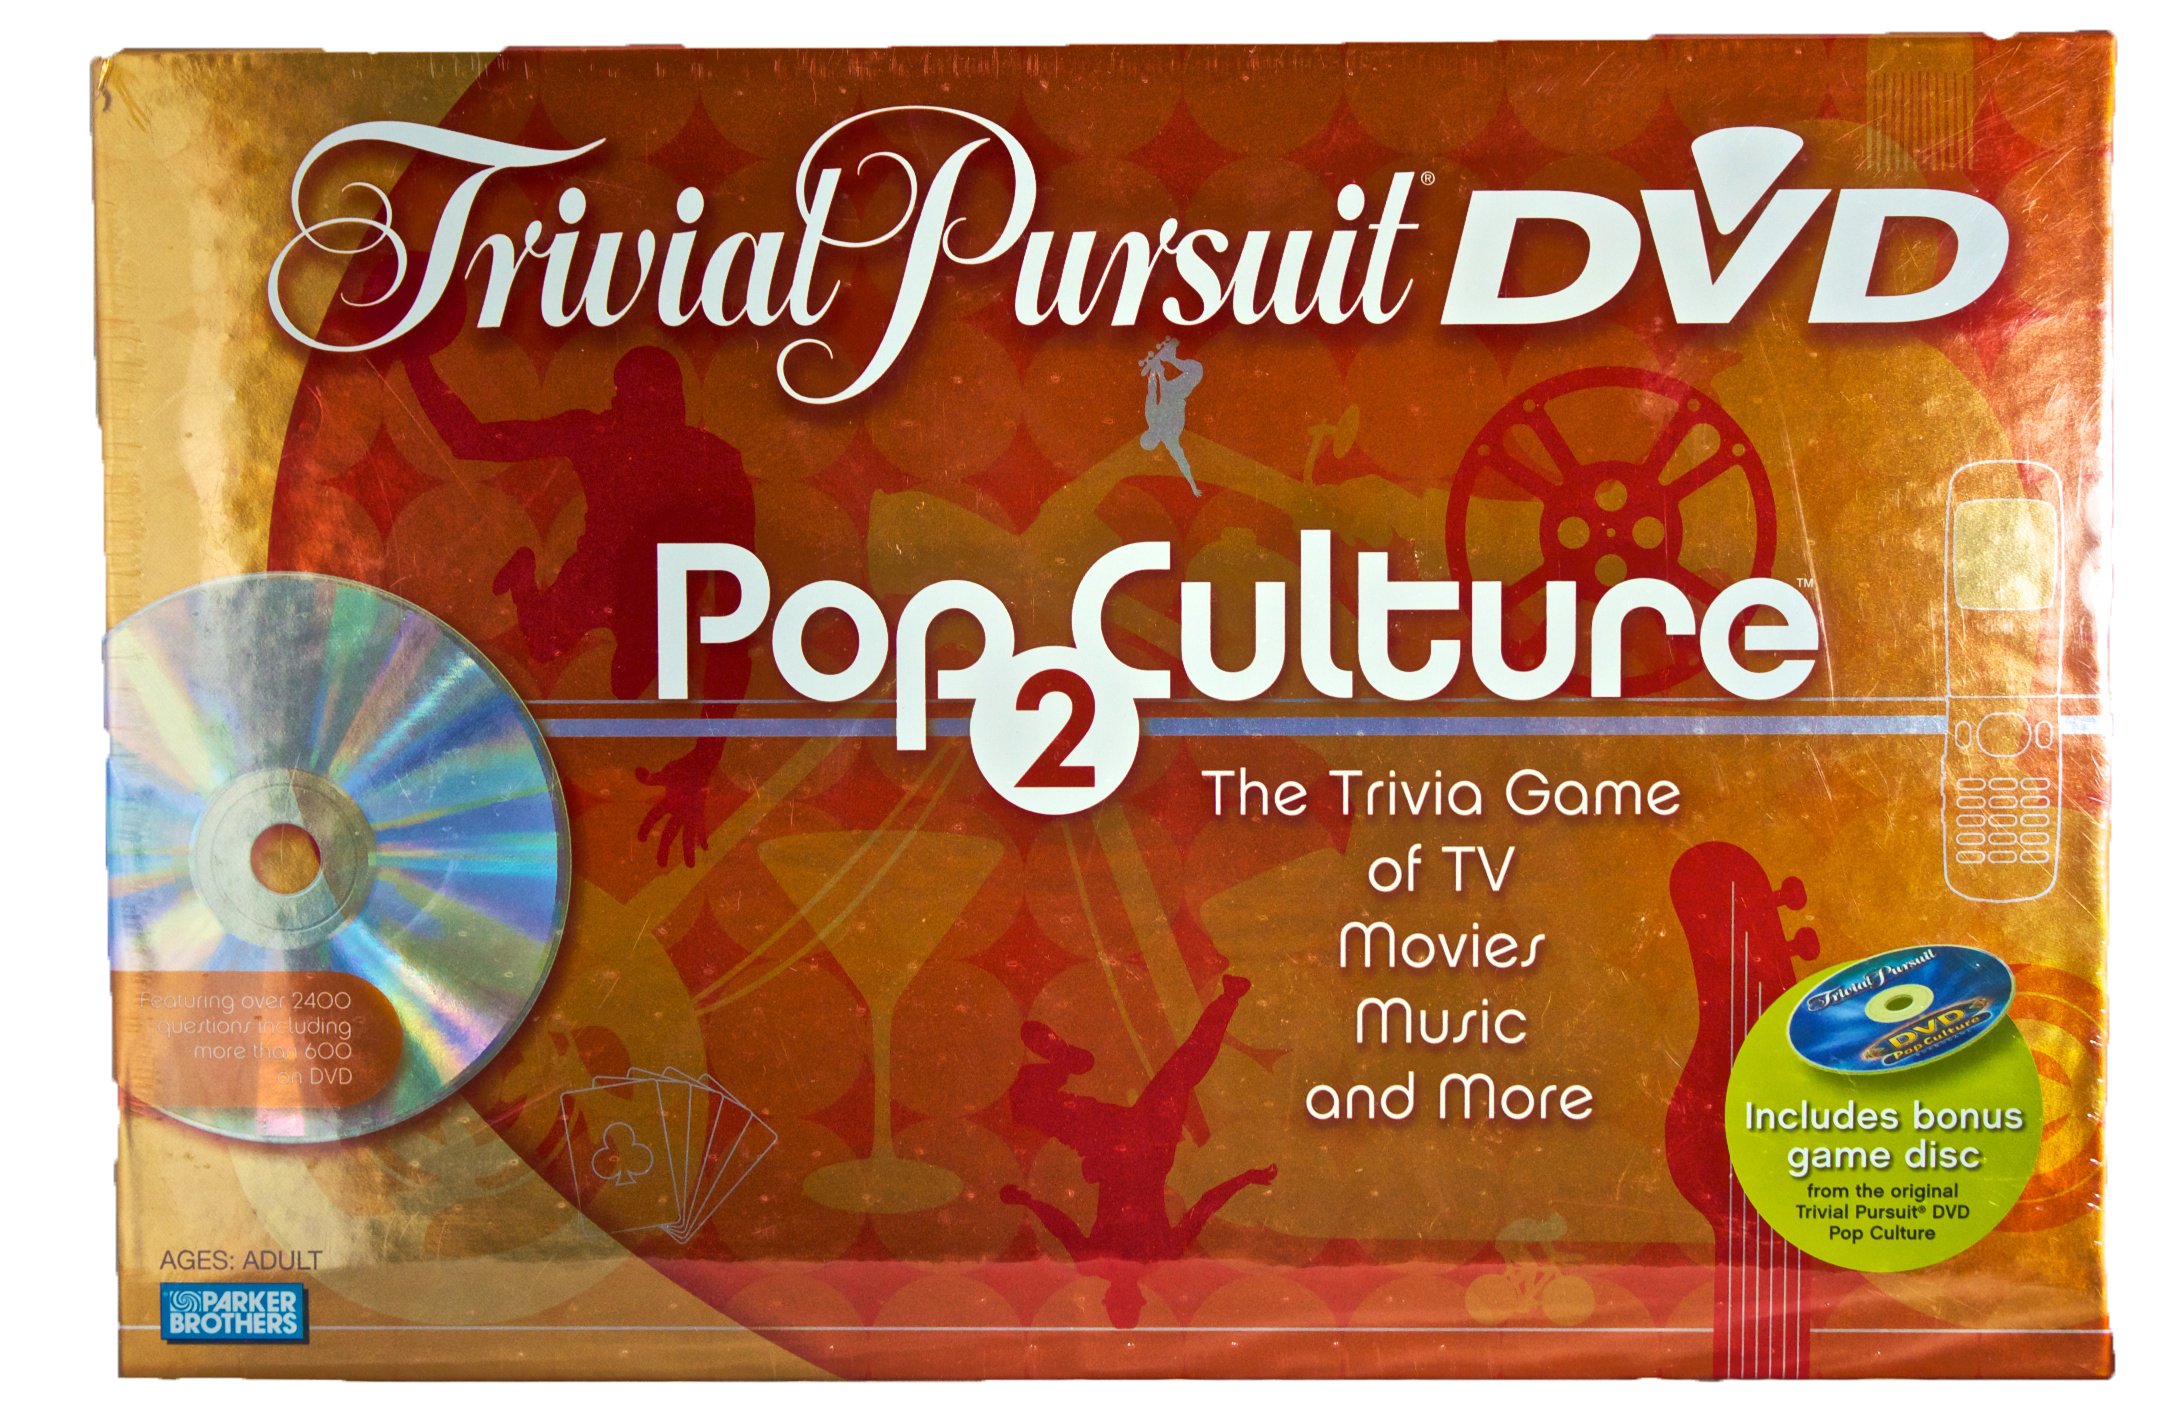 Trivial Pursuit Dvd Pop Culture 2